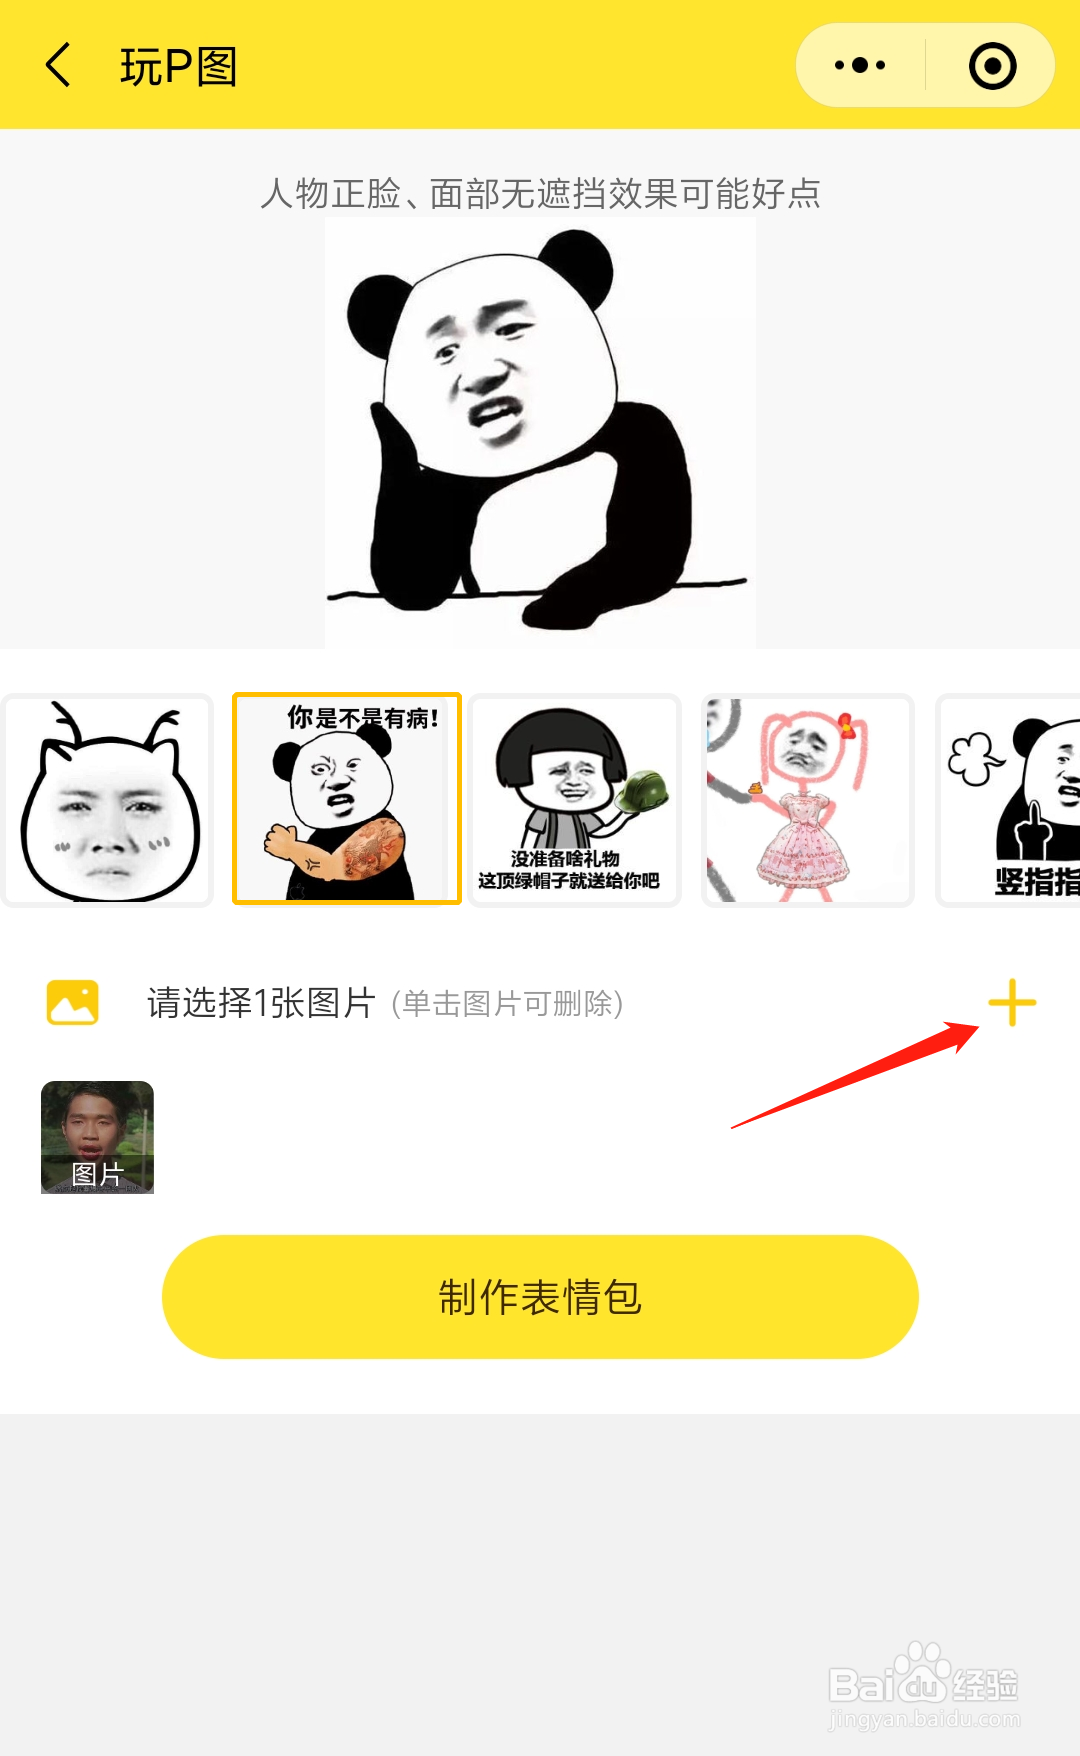 如何不用ps将朋友的照片制作成熊猫头表情包?